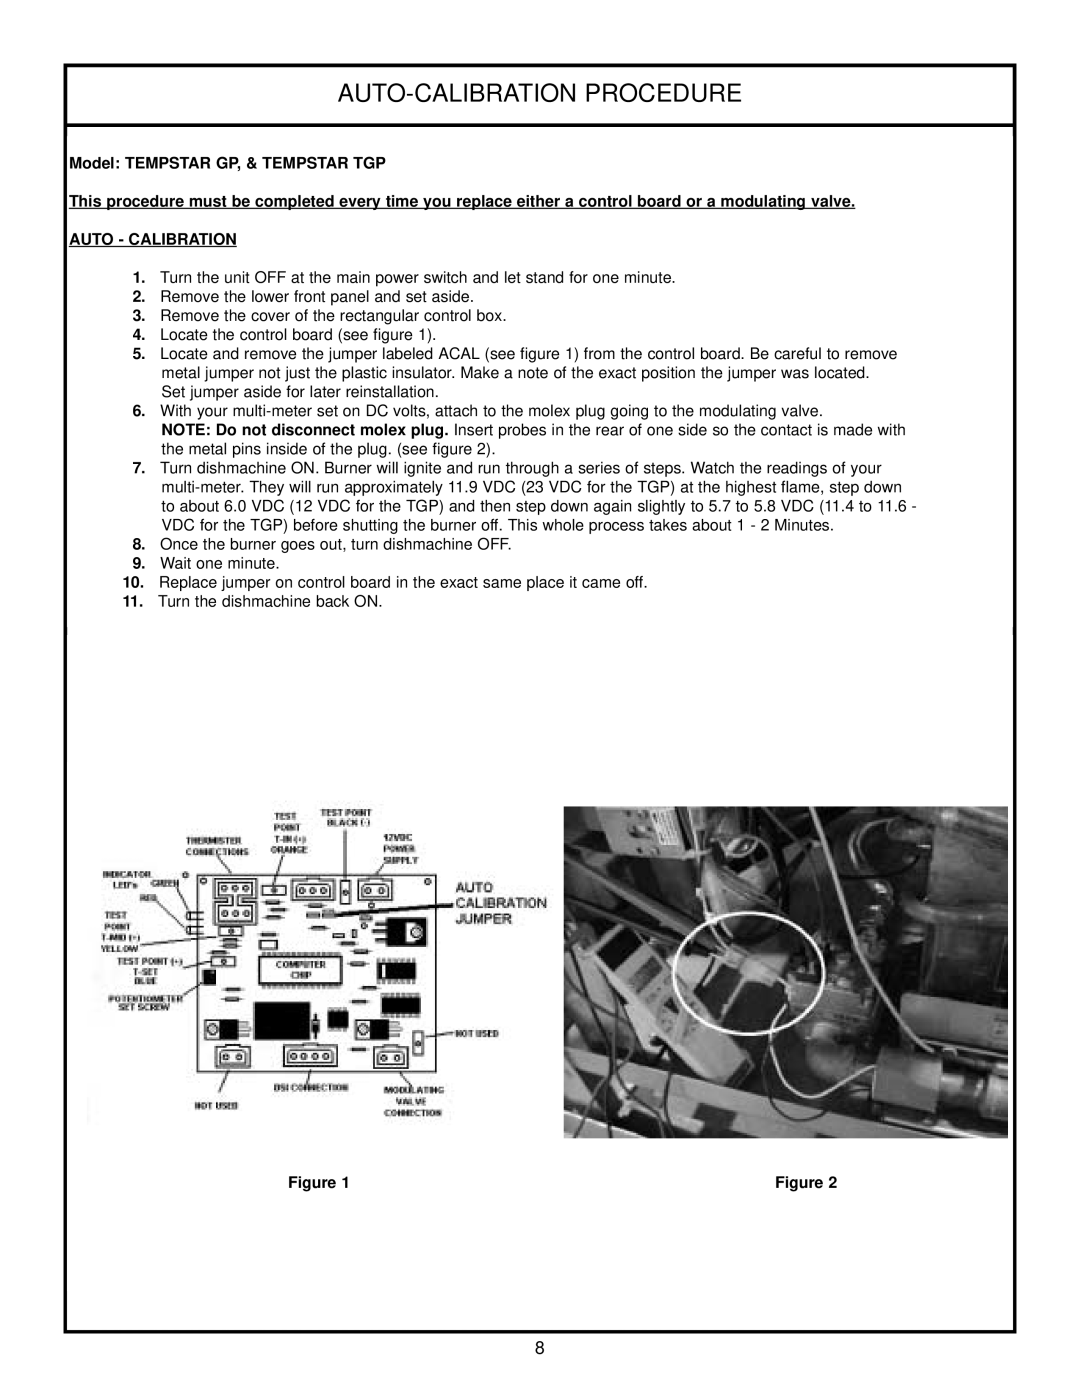 Jackson Tempstar TGP technical manual Auto-Calibration Procedure, Model TEMPSTAR GP, & TEMPSTAR TGP, Auto - Calibration 